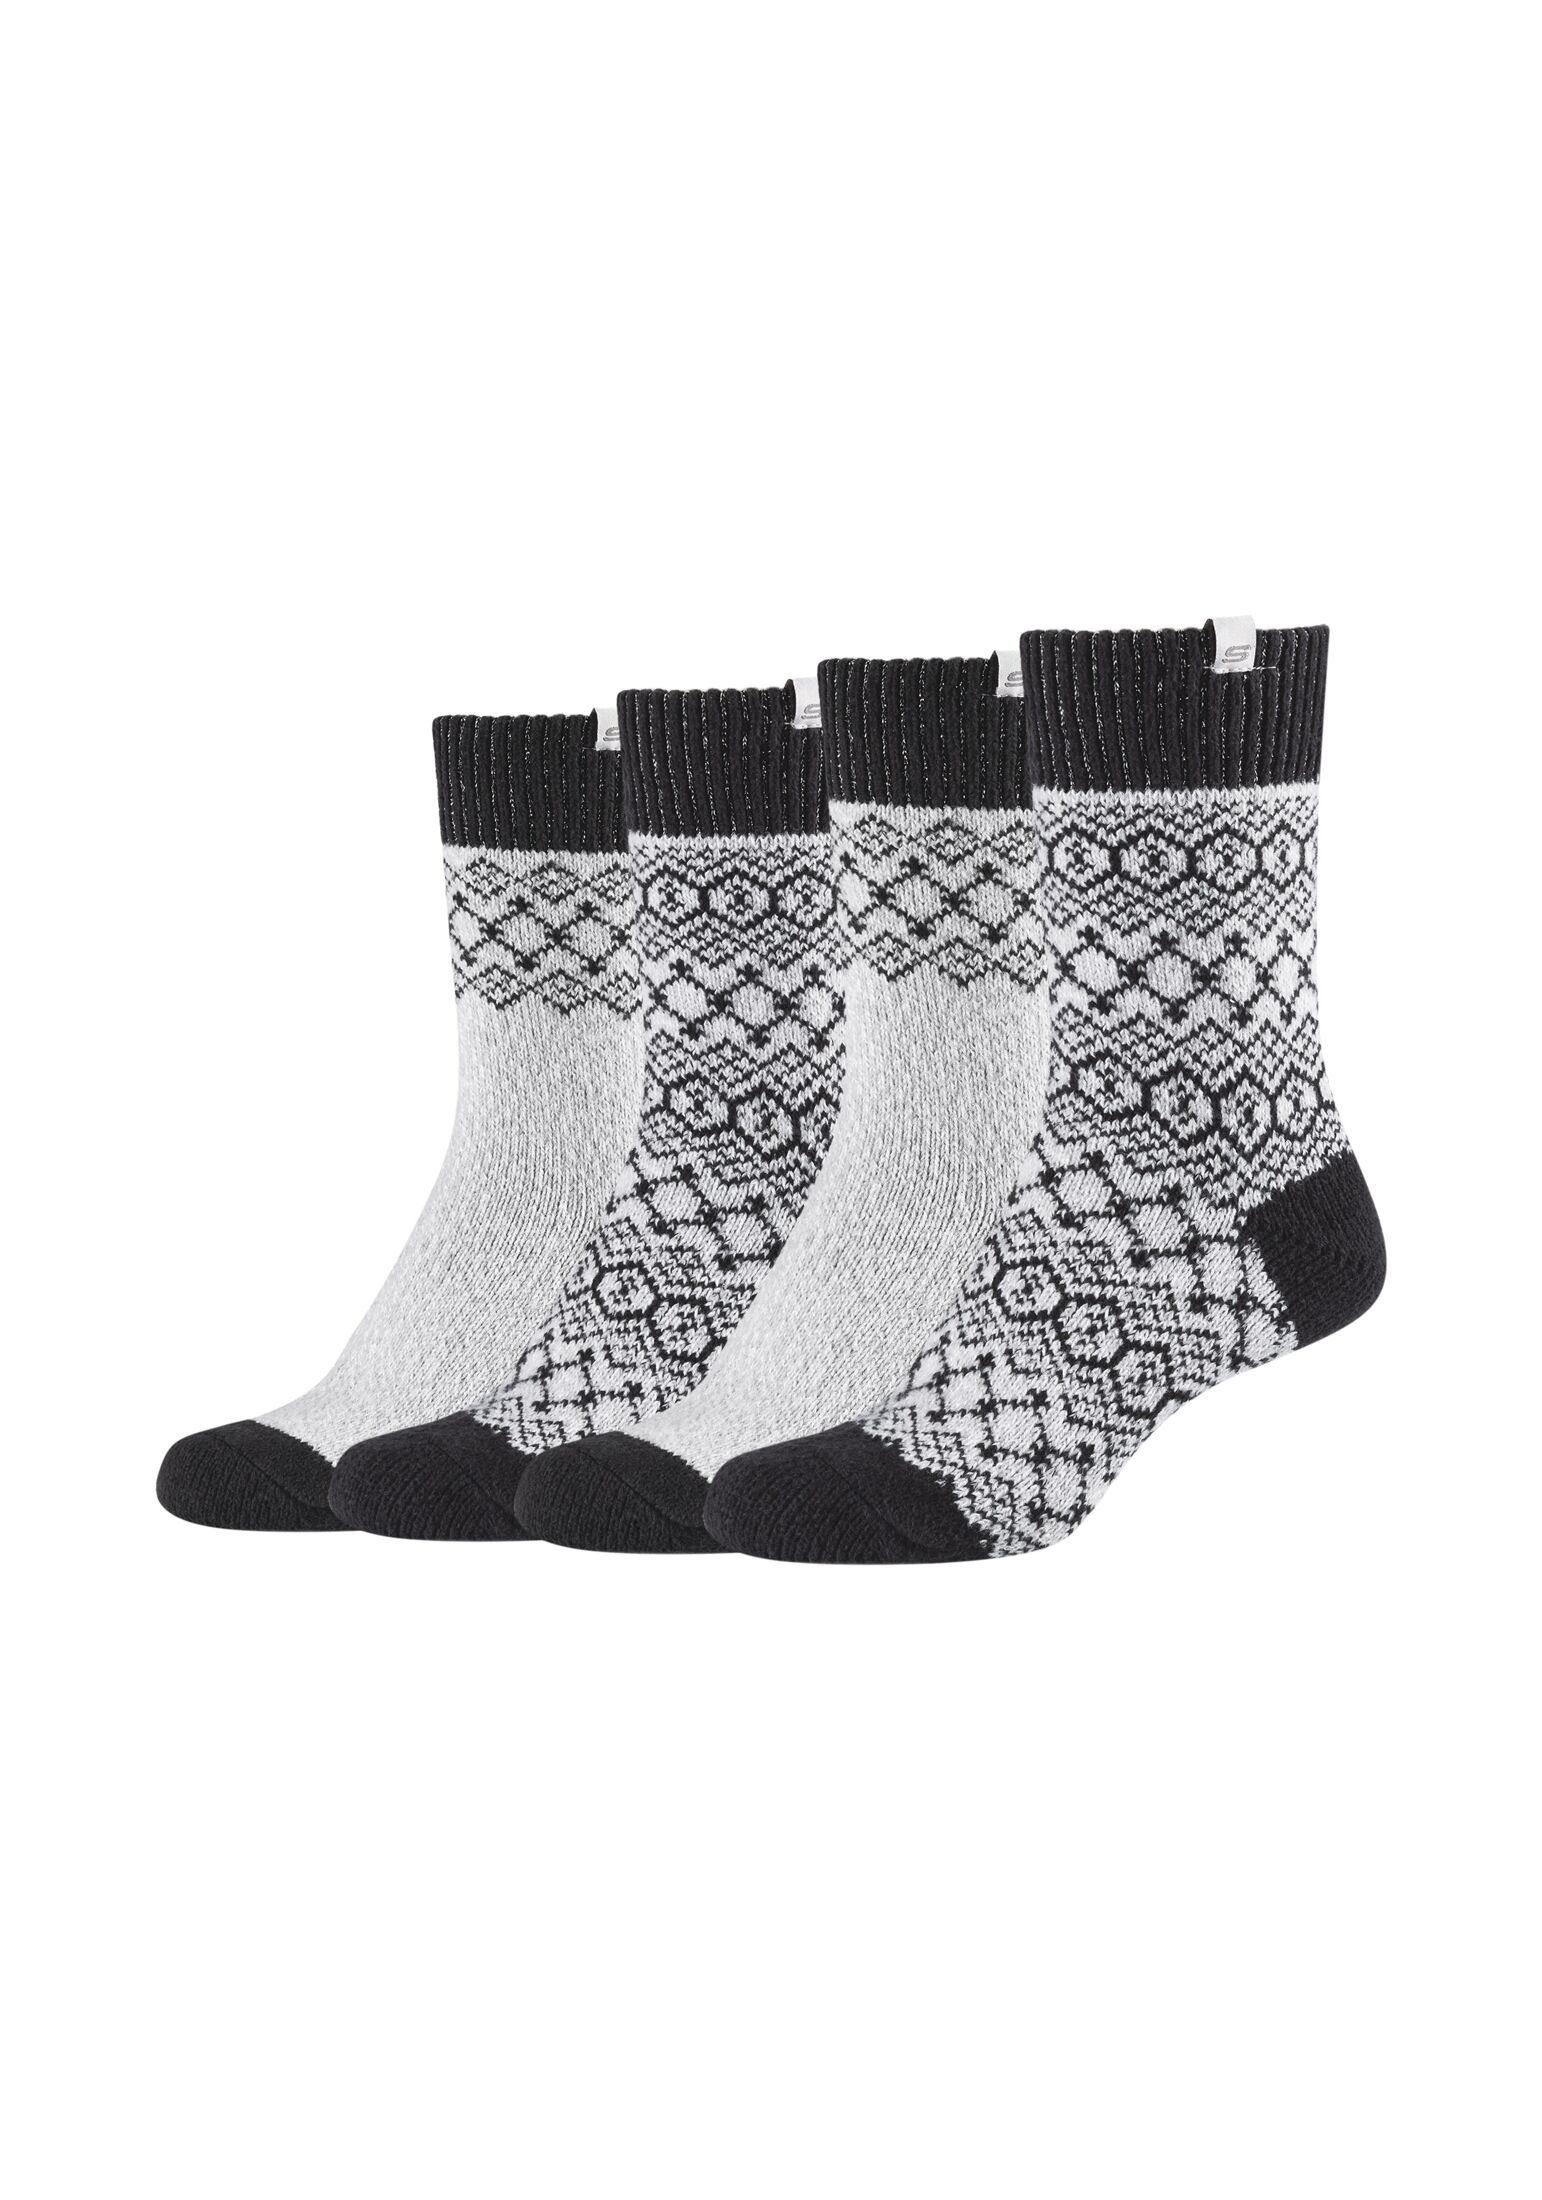 Skechers Socken Socken 4er Pack mouline fog